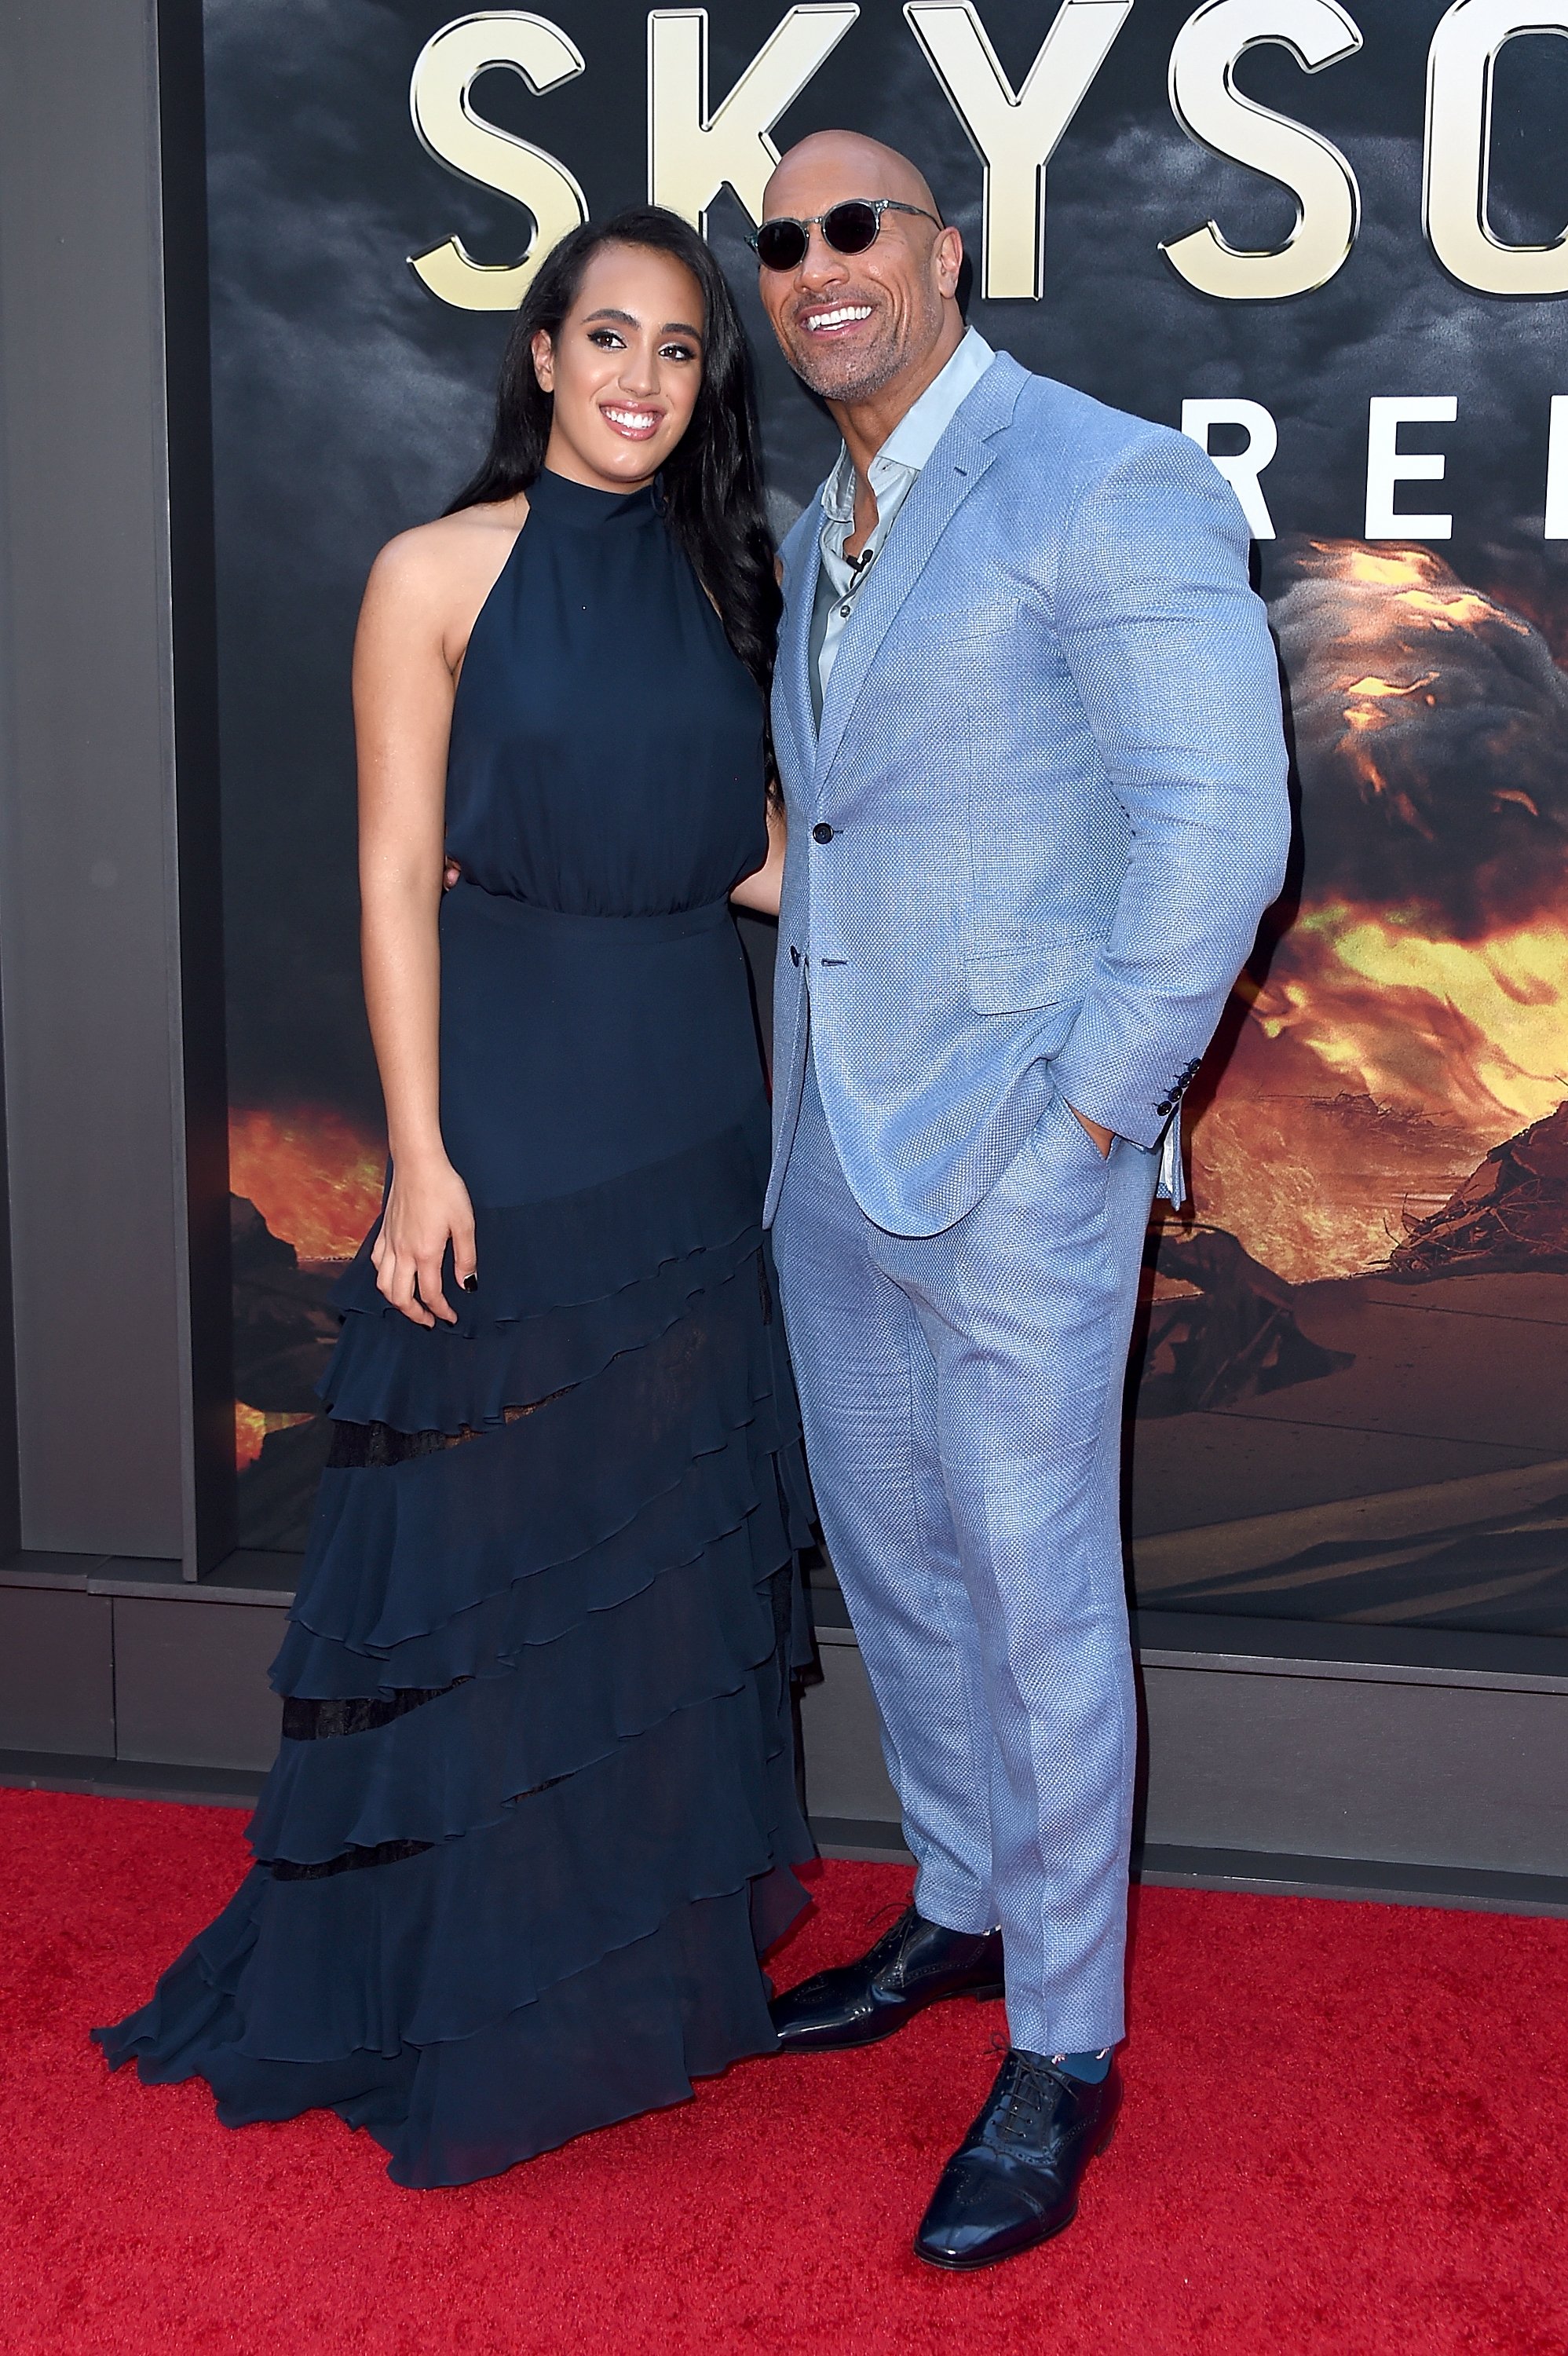 Dwayne Johnson und seine Tochter Simone Garcia Johnson bei der New Yorker Premiere von "Skyscraper" am 10. Juli 2018 in New York City | Quelle: Getty Images